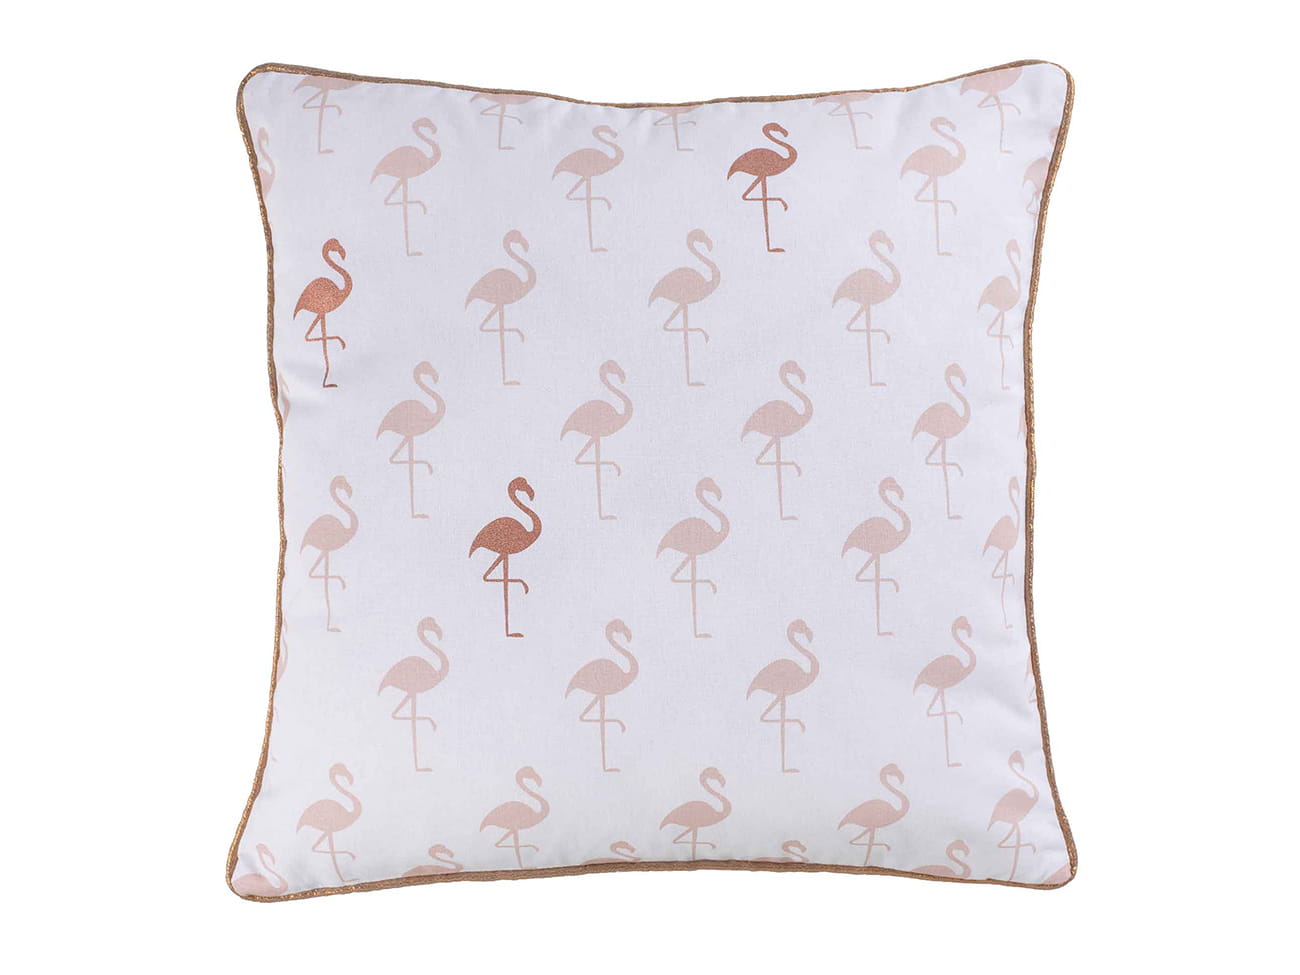 Nowoczesne bawełniane poszewki na jaśki we flamingi